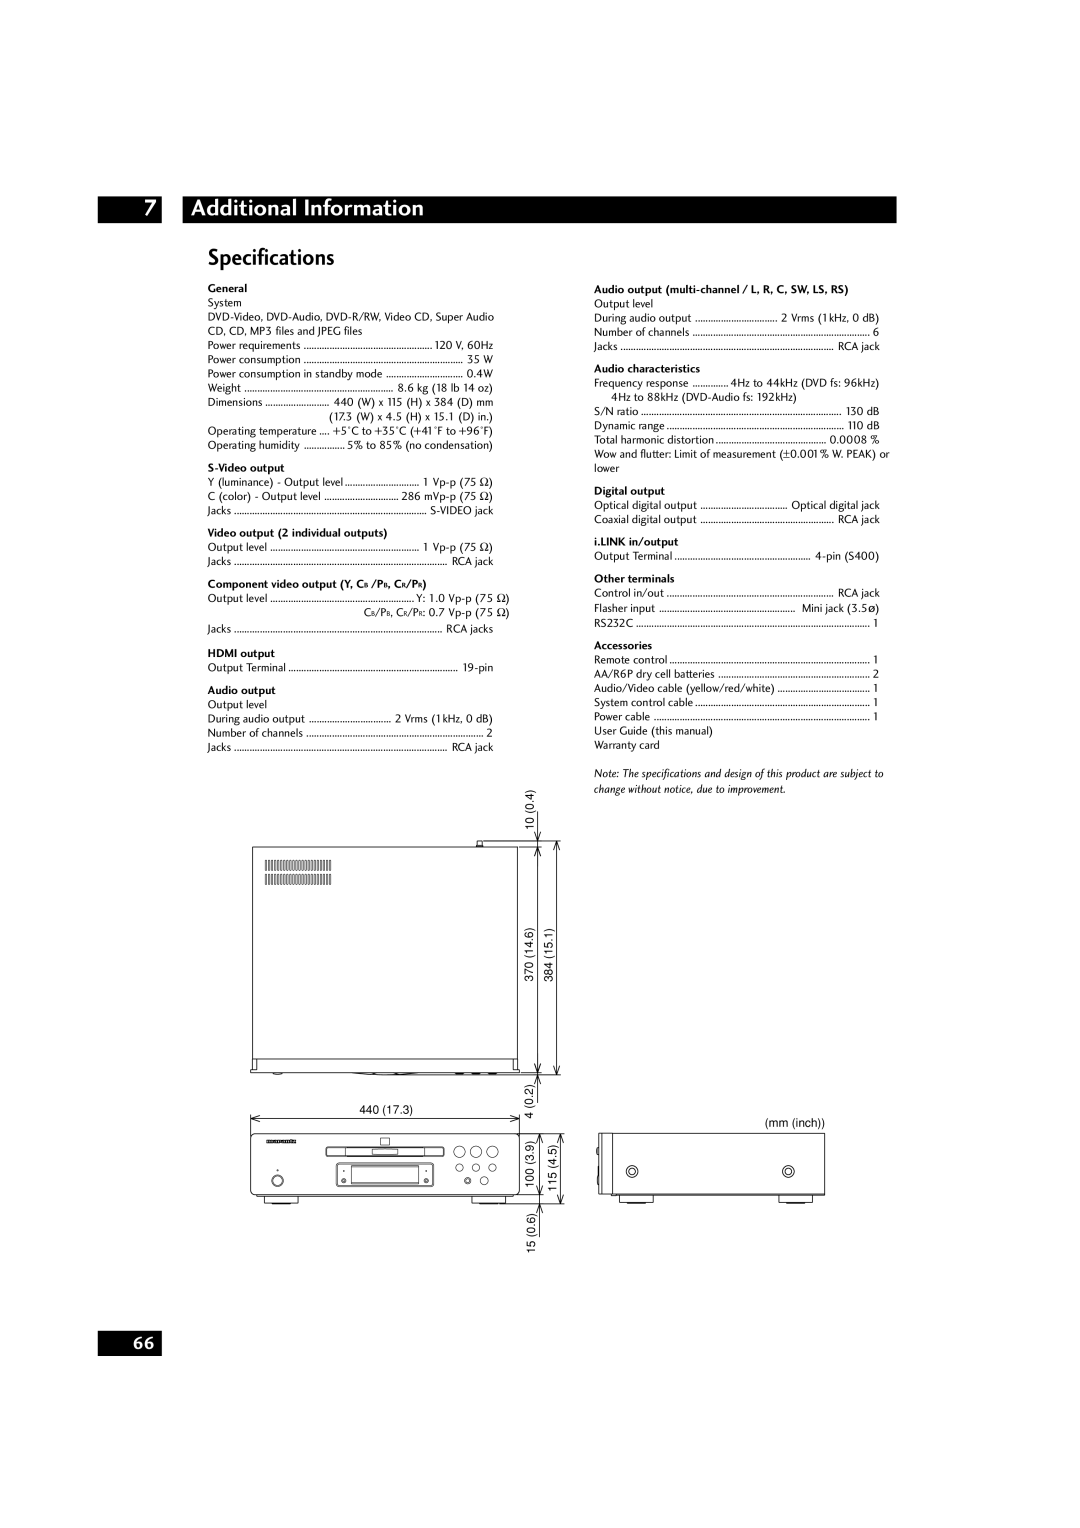 Marantz DV9600 manual Specifications, Additional Information 